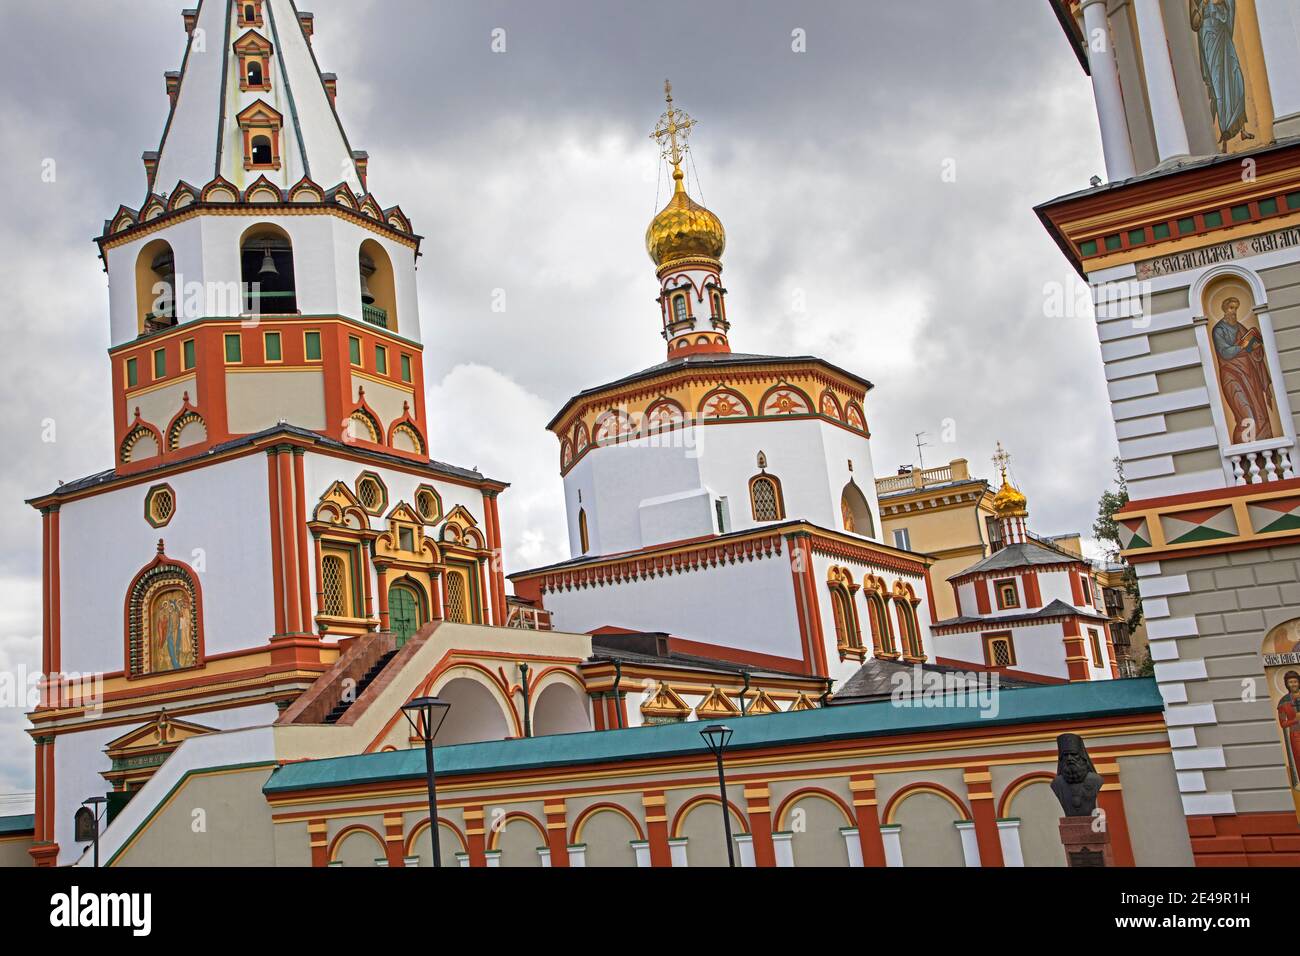 Cattedrale dell'Epifania del XVIII secolo, Chiesa ortodossa russa nella città di Irkutsk, Siberia meridionale, Russia Foto Stock